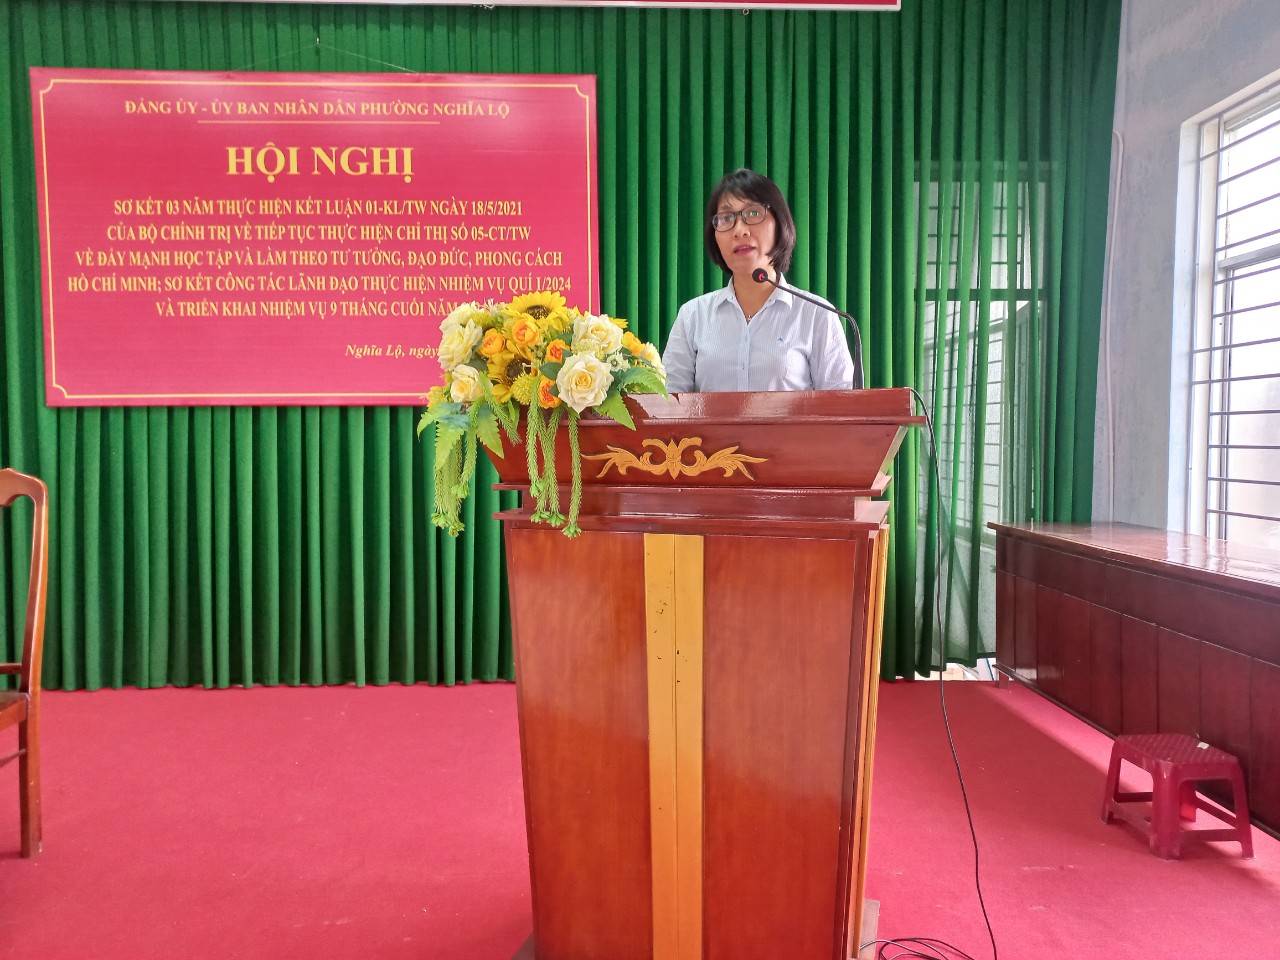 Đồng chí Nguyễn Thị Tài Định, Thành ủy viên - Bí thư Đảng ủy phát biểu khai mạc Hội nghị và phổ biến các văn bản của Đảng